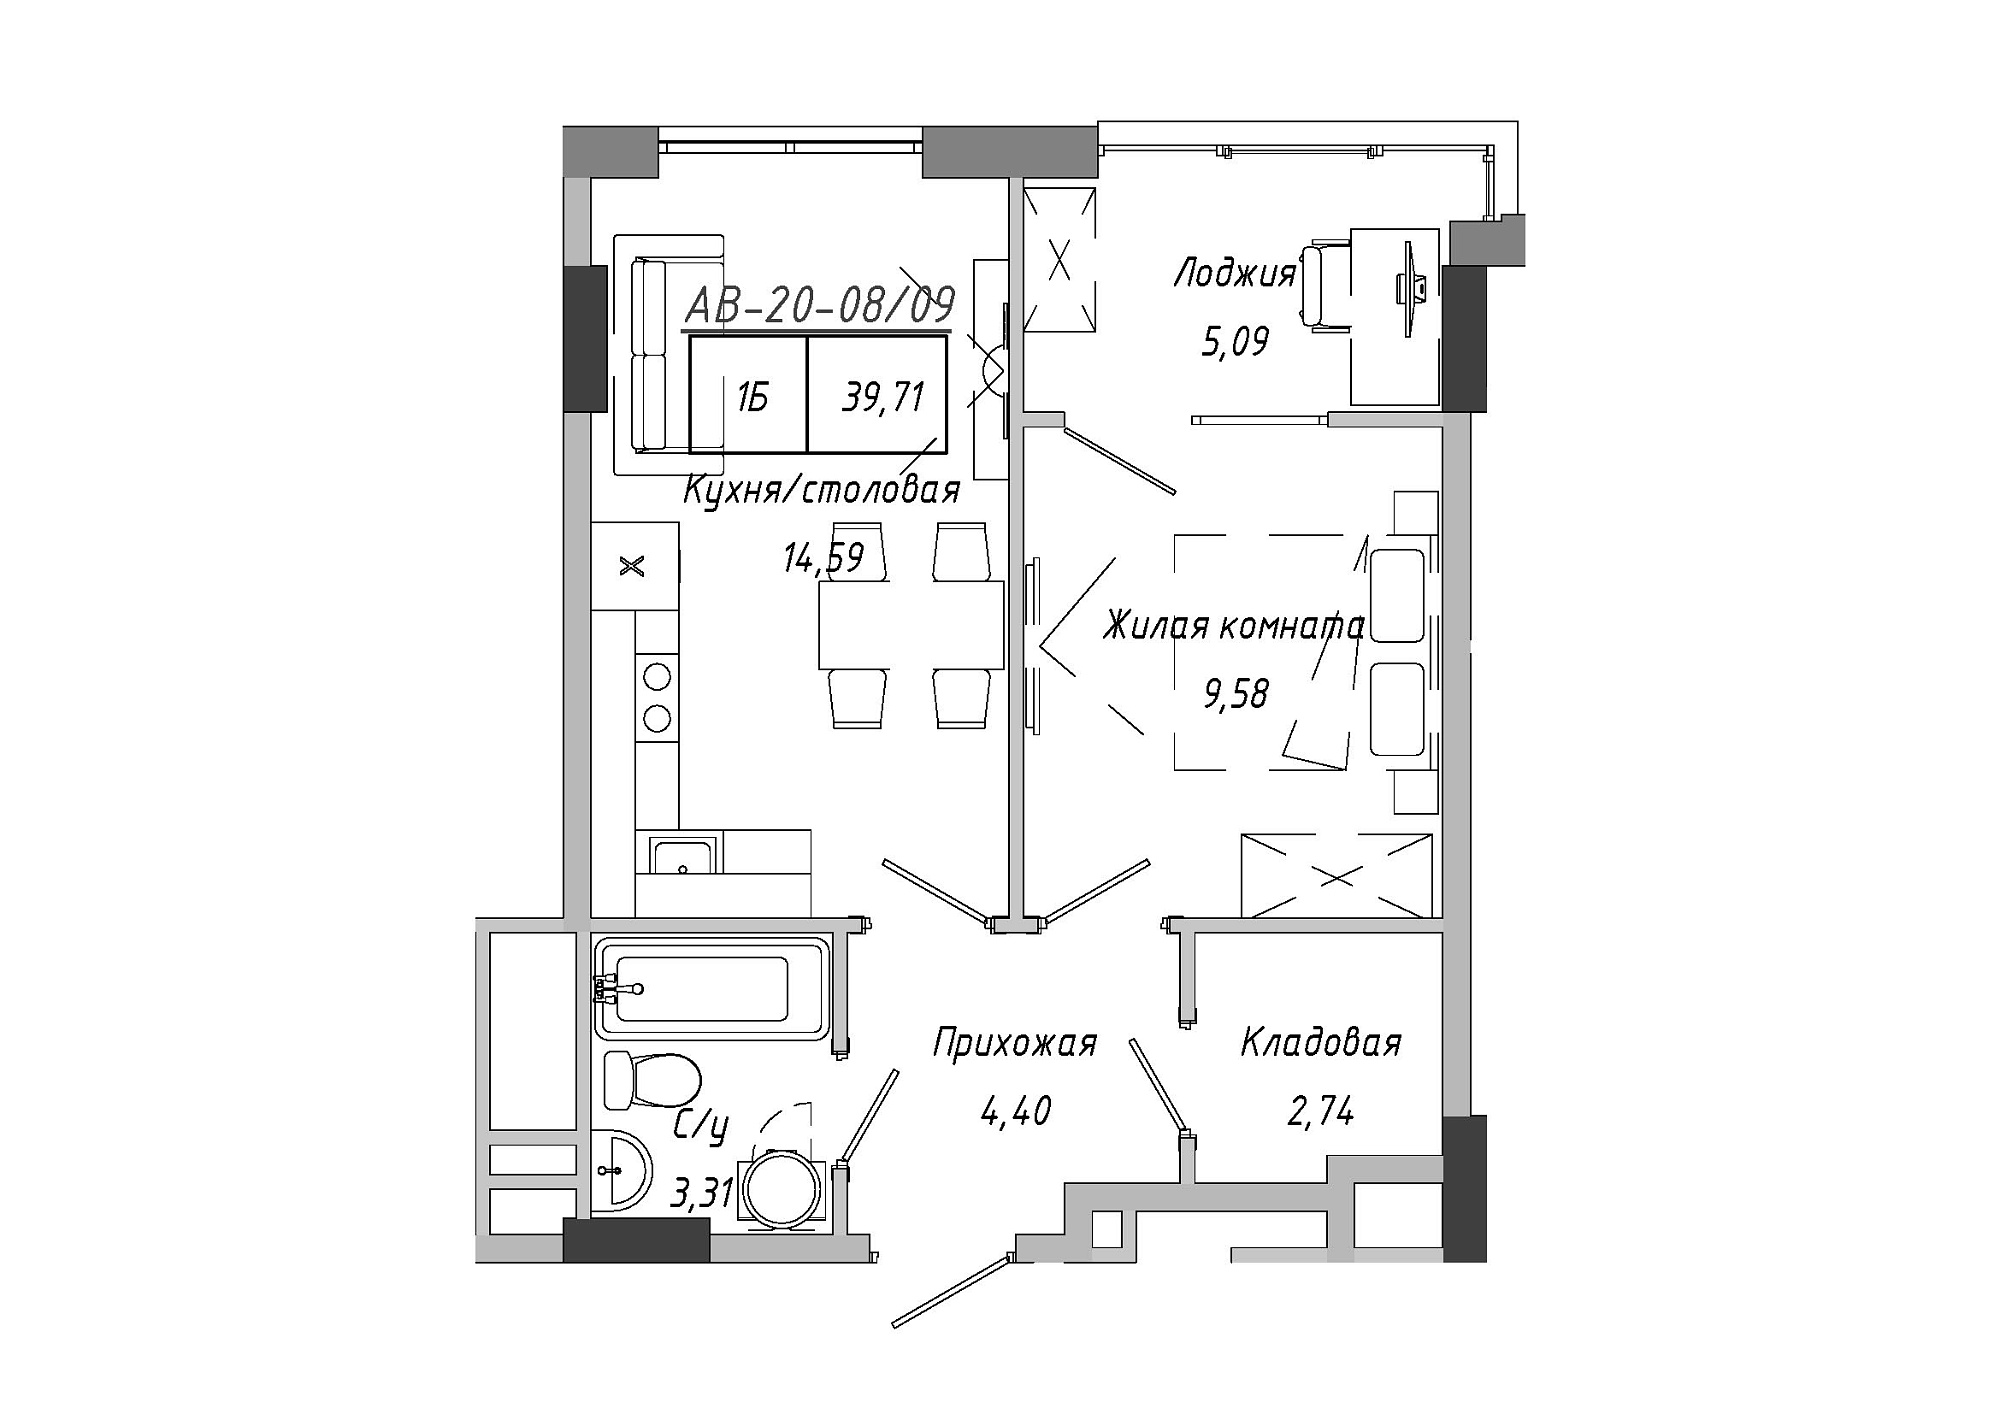 Планировка 1-к квартира площей 37.59м2, AB-20-08/00009.